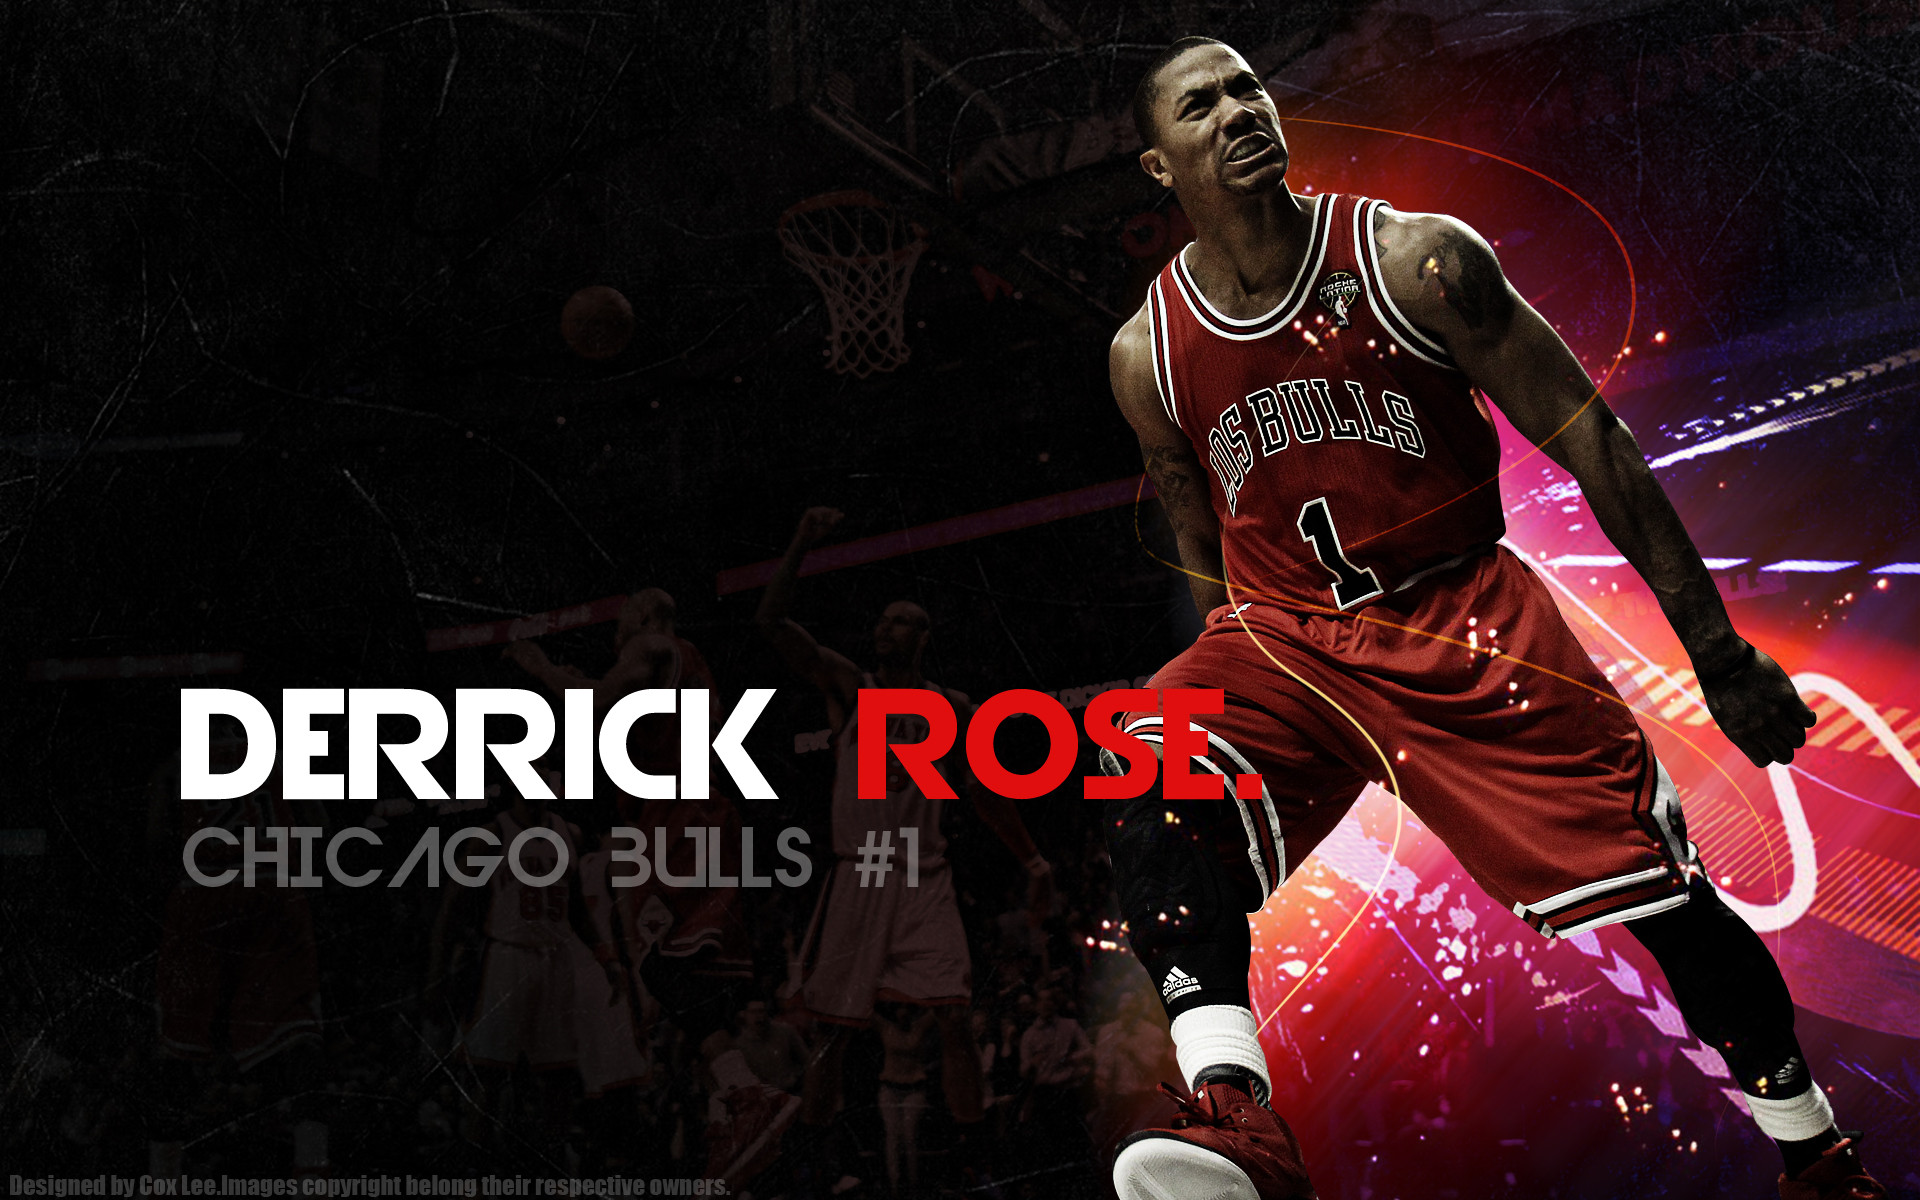 derrick rose wallpaper hd,giocatore di pallacanestro,pallacanestro,mosse di basket,calciatore,giocatore